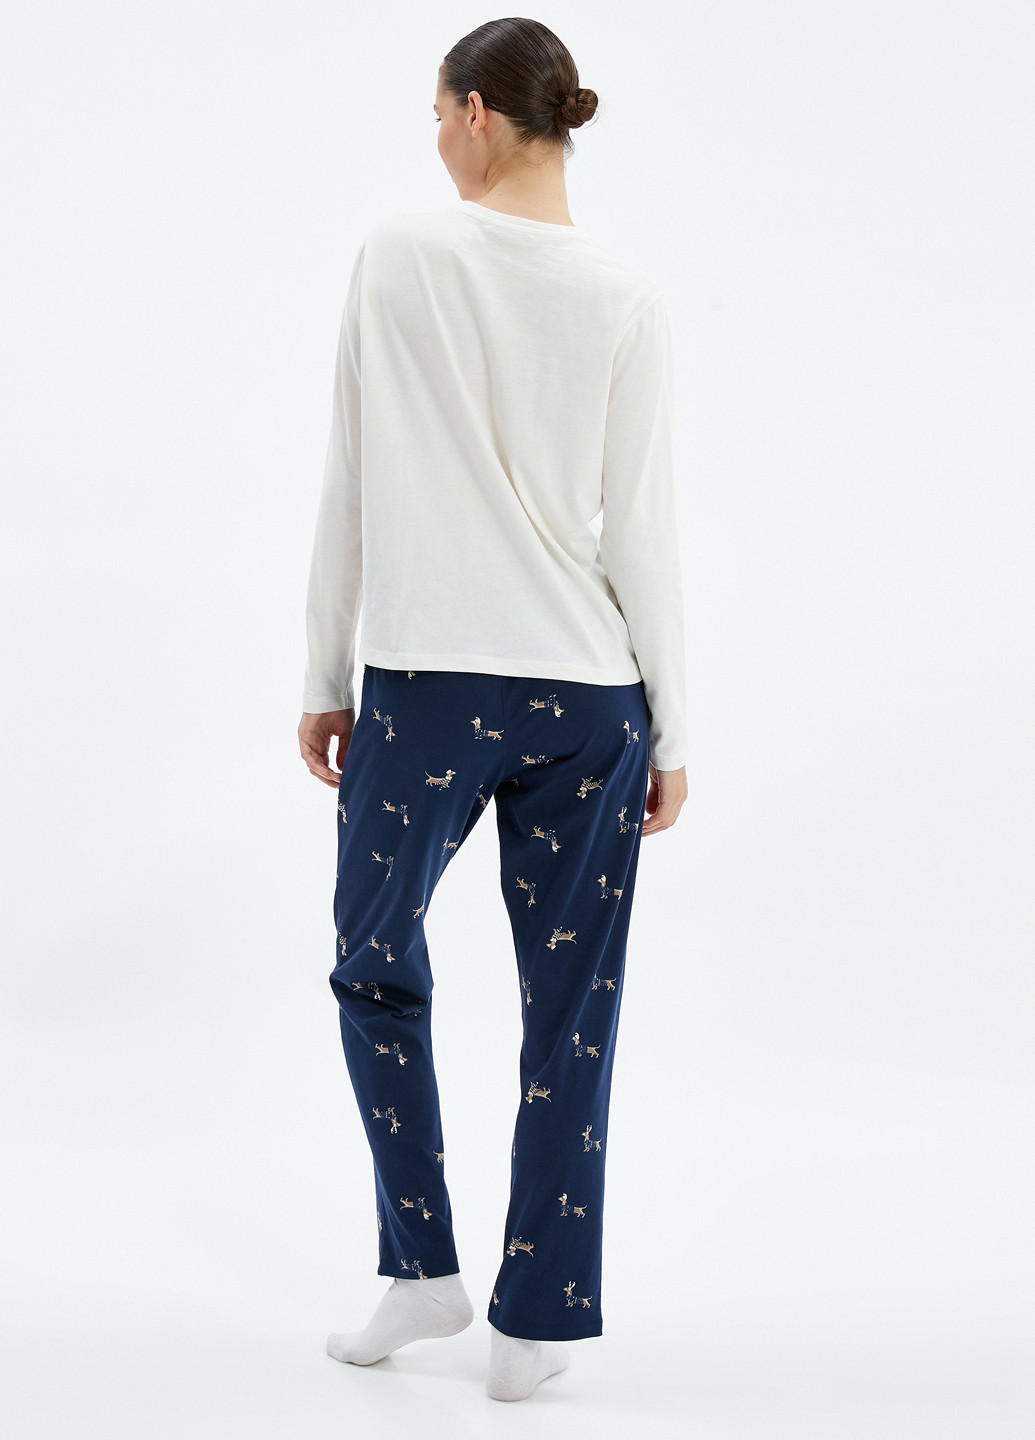 Комбинированная всесезон пижама (лонгслив, брюки) лонгслив + брюки KOTON